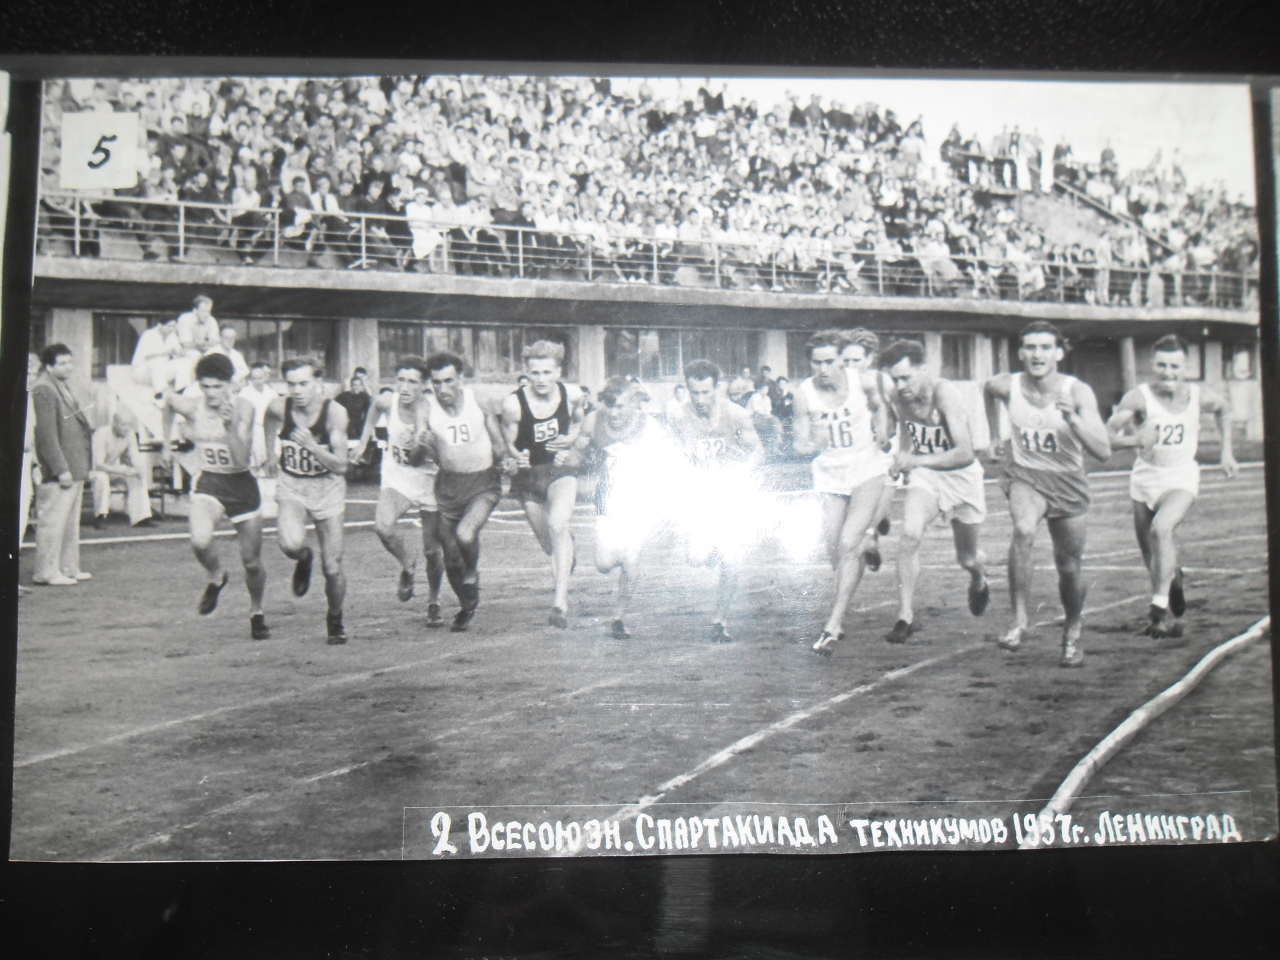 Թեթև ատլետիկայի մրցումներ՝ թիվ 82 Սերգեյ Վանոյի Ղազանչյան ( Հանրապետության վազքի չեմպիոն, ՀՍՍՀ վաստակավոր մարզիչ)